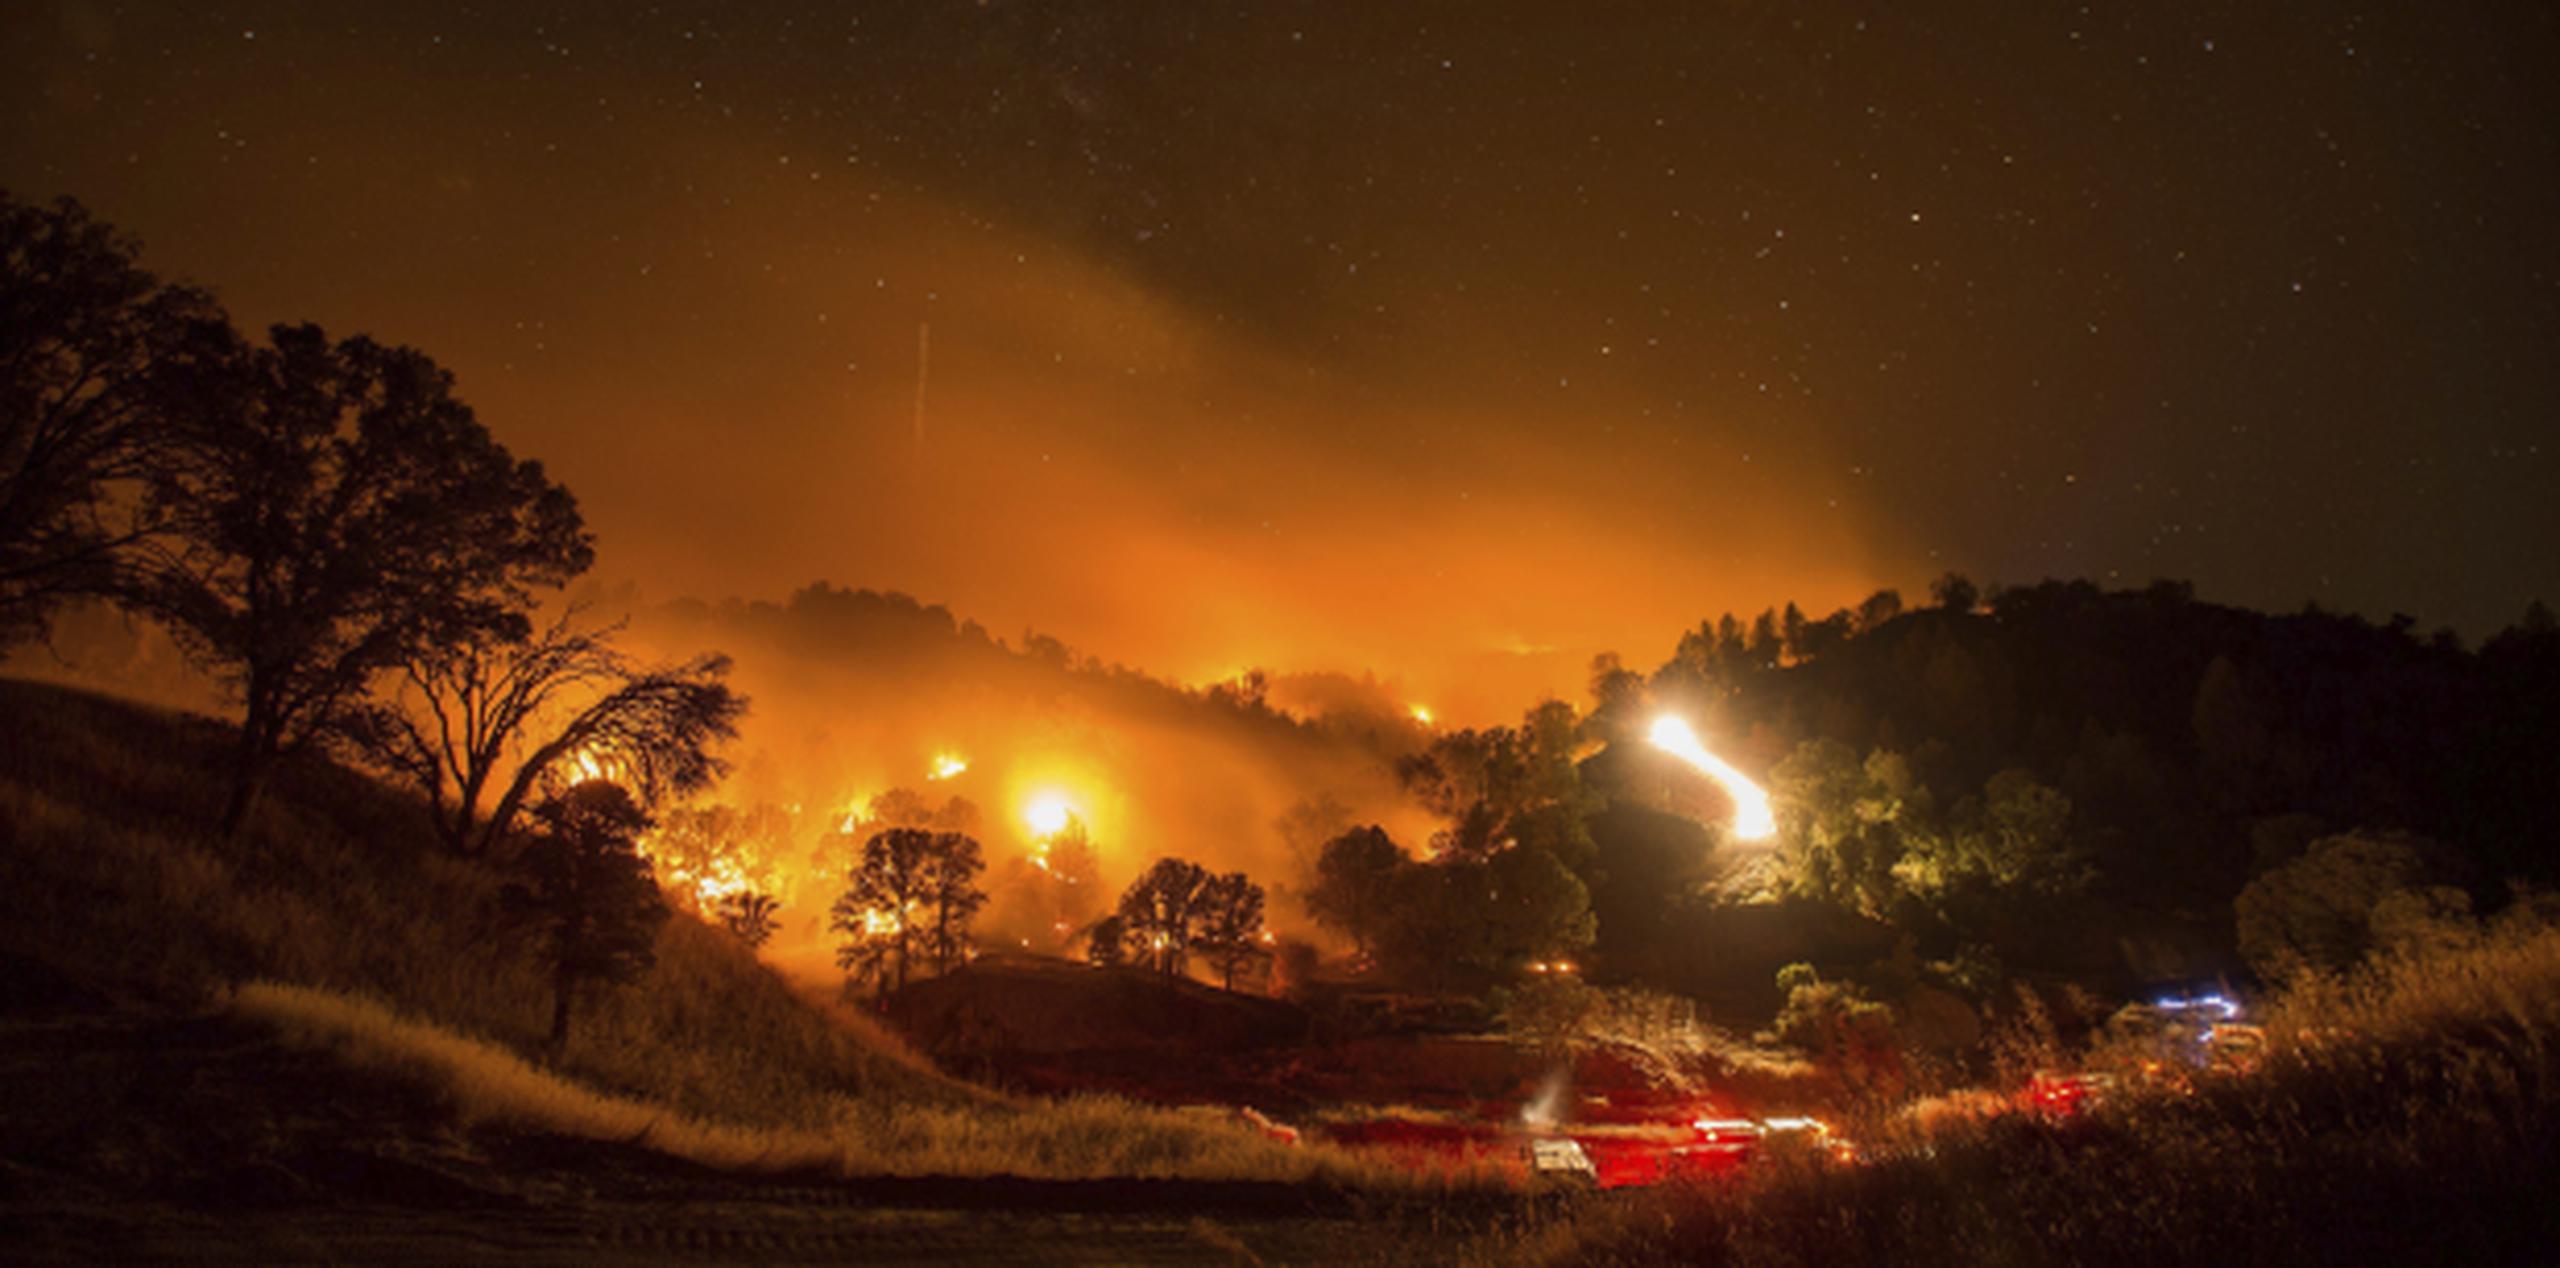 El incendio activo más grande en estos momentos, llamado Rocky Fire, se encuentra en una zona agreste entre los condados de Lake, Yolo y Colusa, al norte de Sacramento y el área vitivinícola del valle de Napa. (EFE)